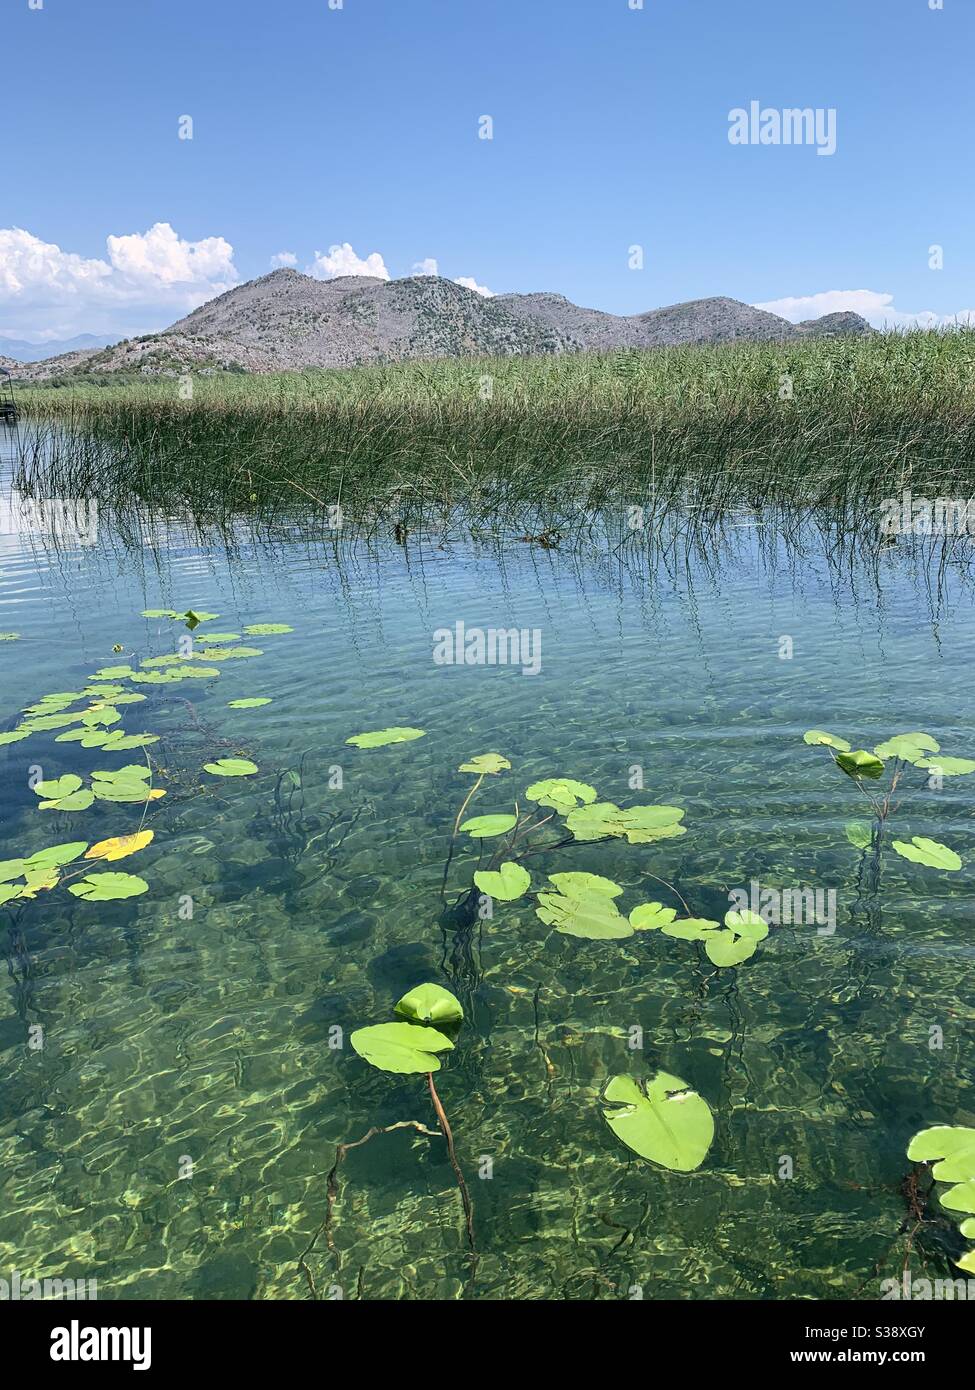 Lollie d'acqua galleggianti sulle acque limpide del lago skadar con montagne sullo sfondo Foto Stock